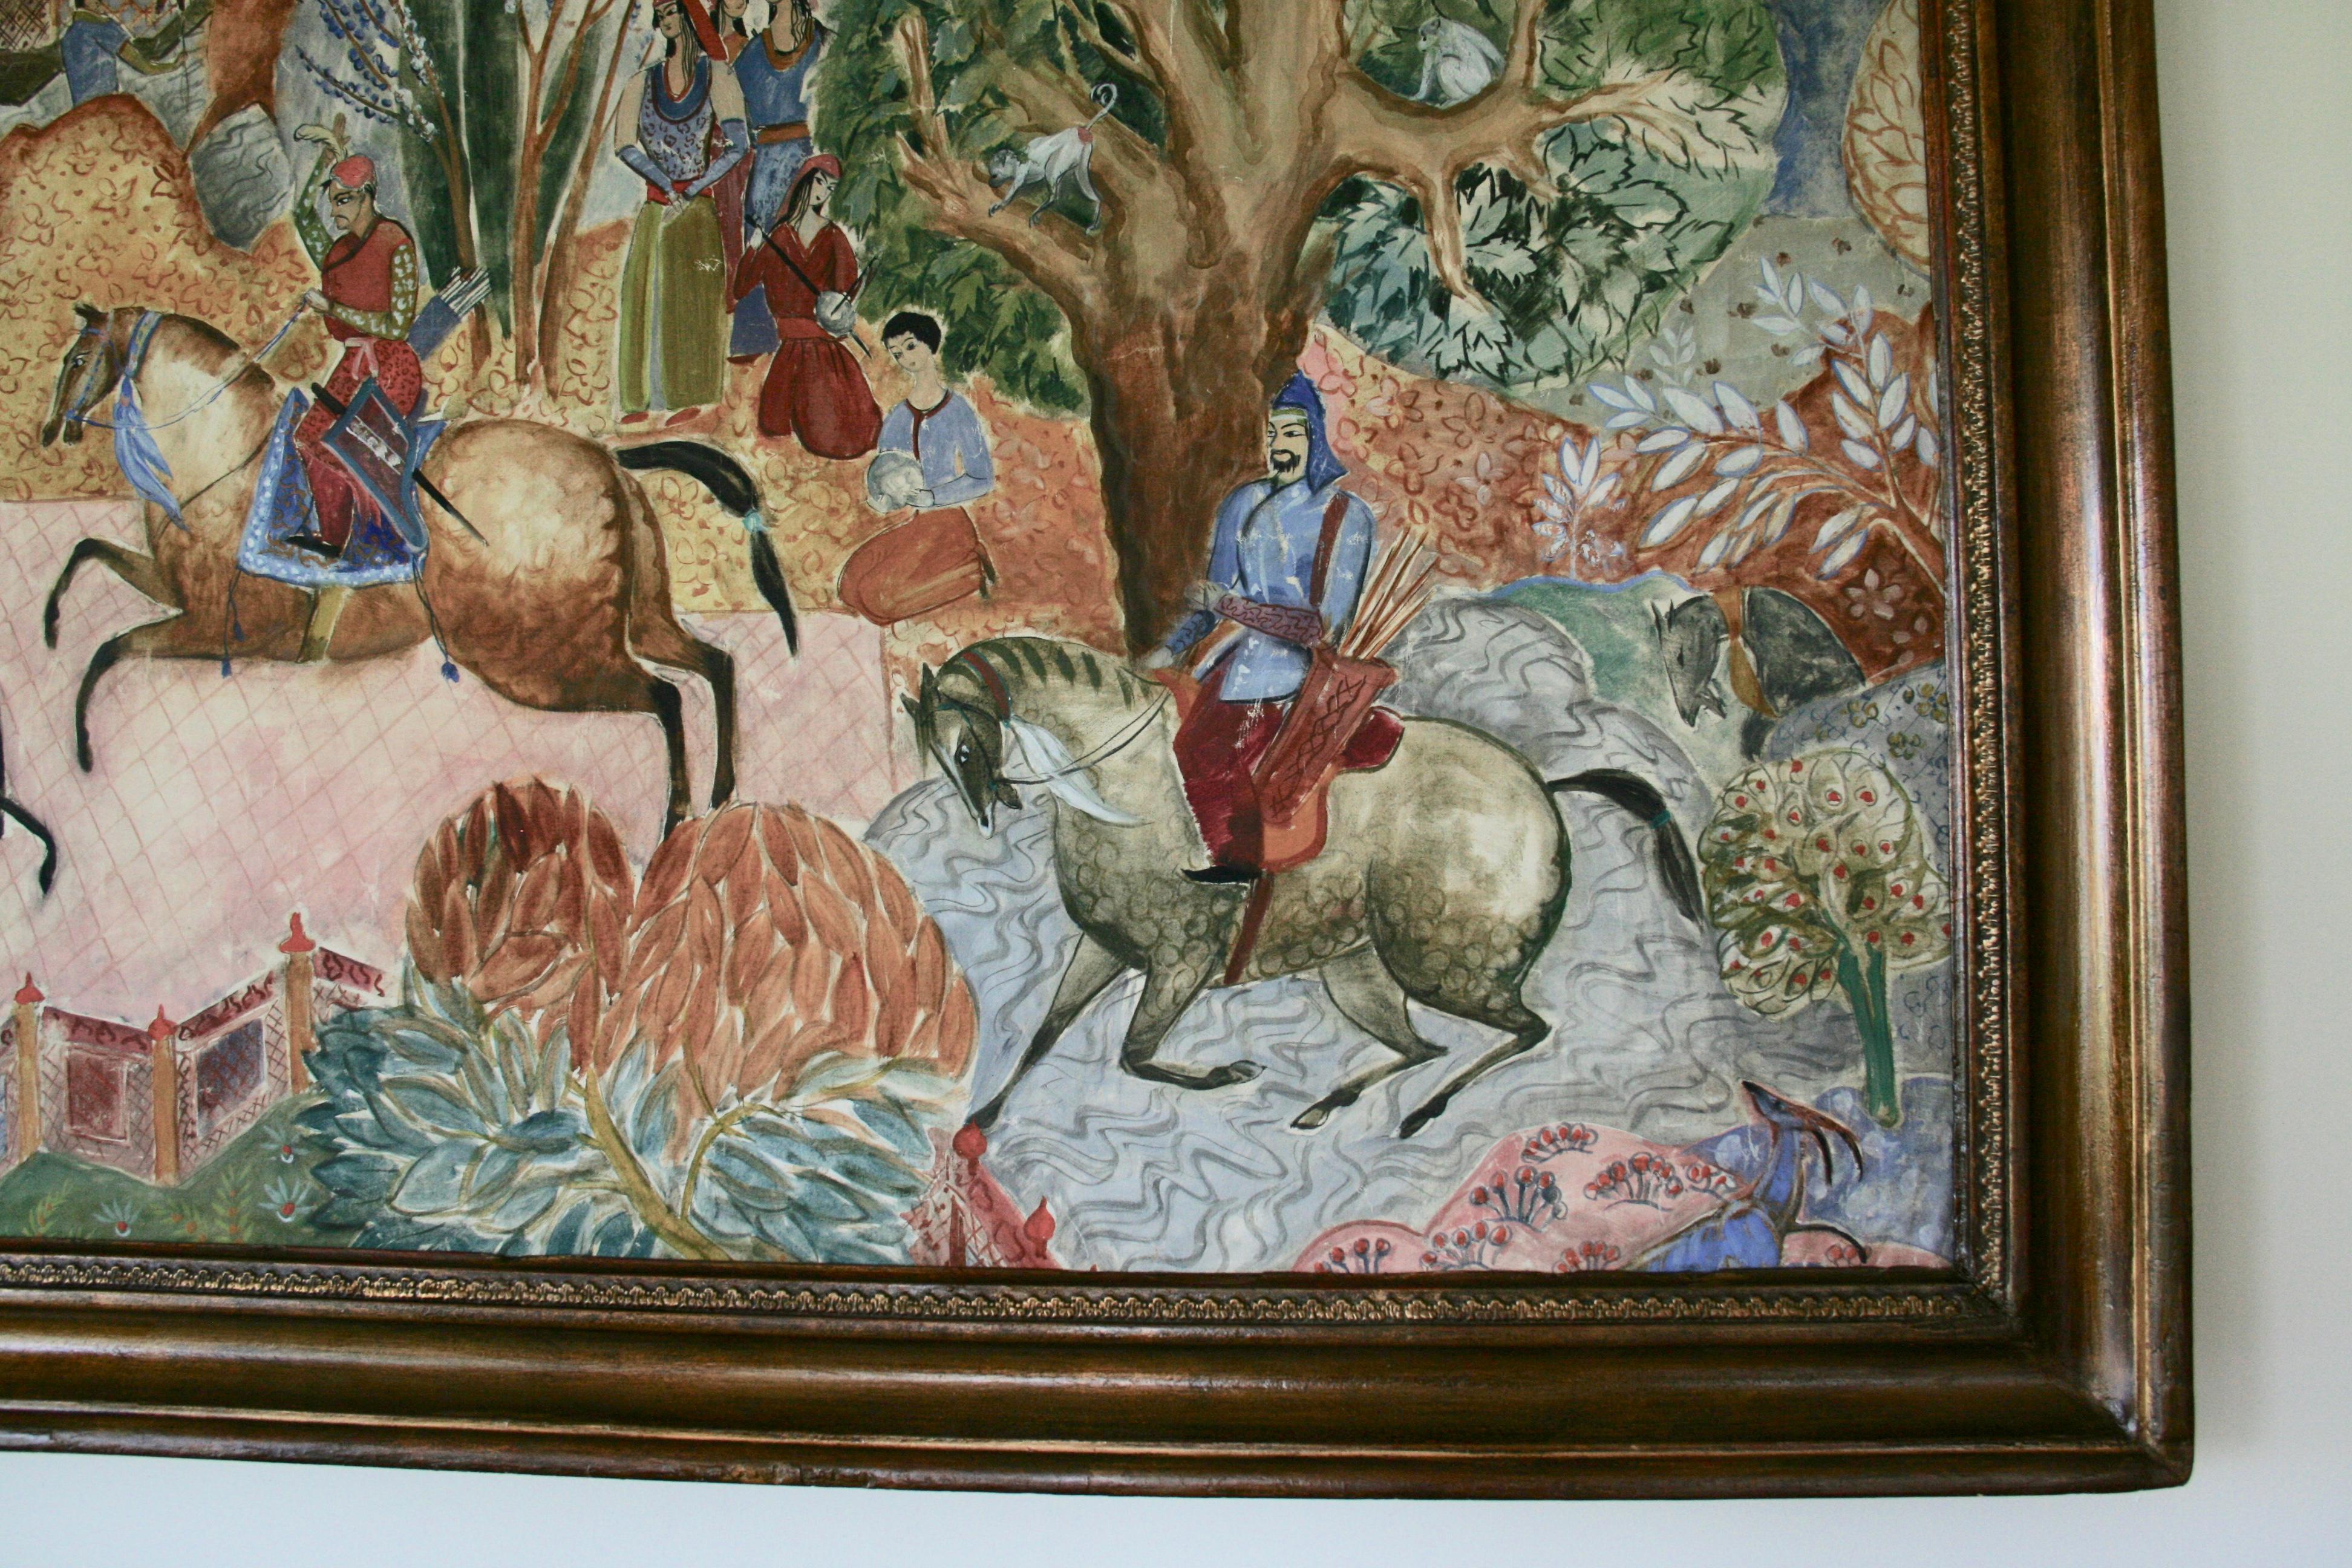 #5-01 Large Scale Persian Hunt, circa 1920 peinture à l'huile sur toile représentant une scène de chasse, présentée dans un cadre en bois-gesso.Image size 39 H X 59.5 W.
Artiste inconnu.
Usure d'âge sur le cadre, petites pertes.